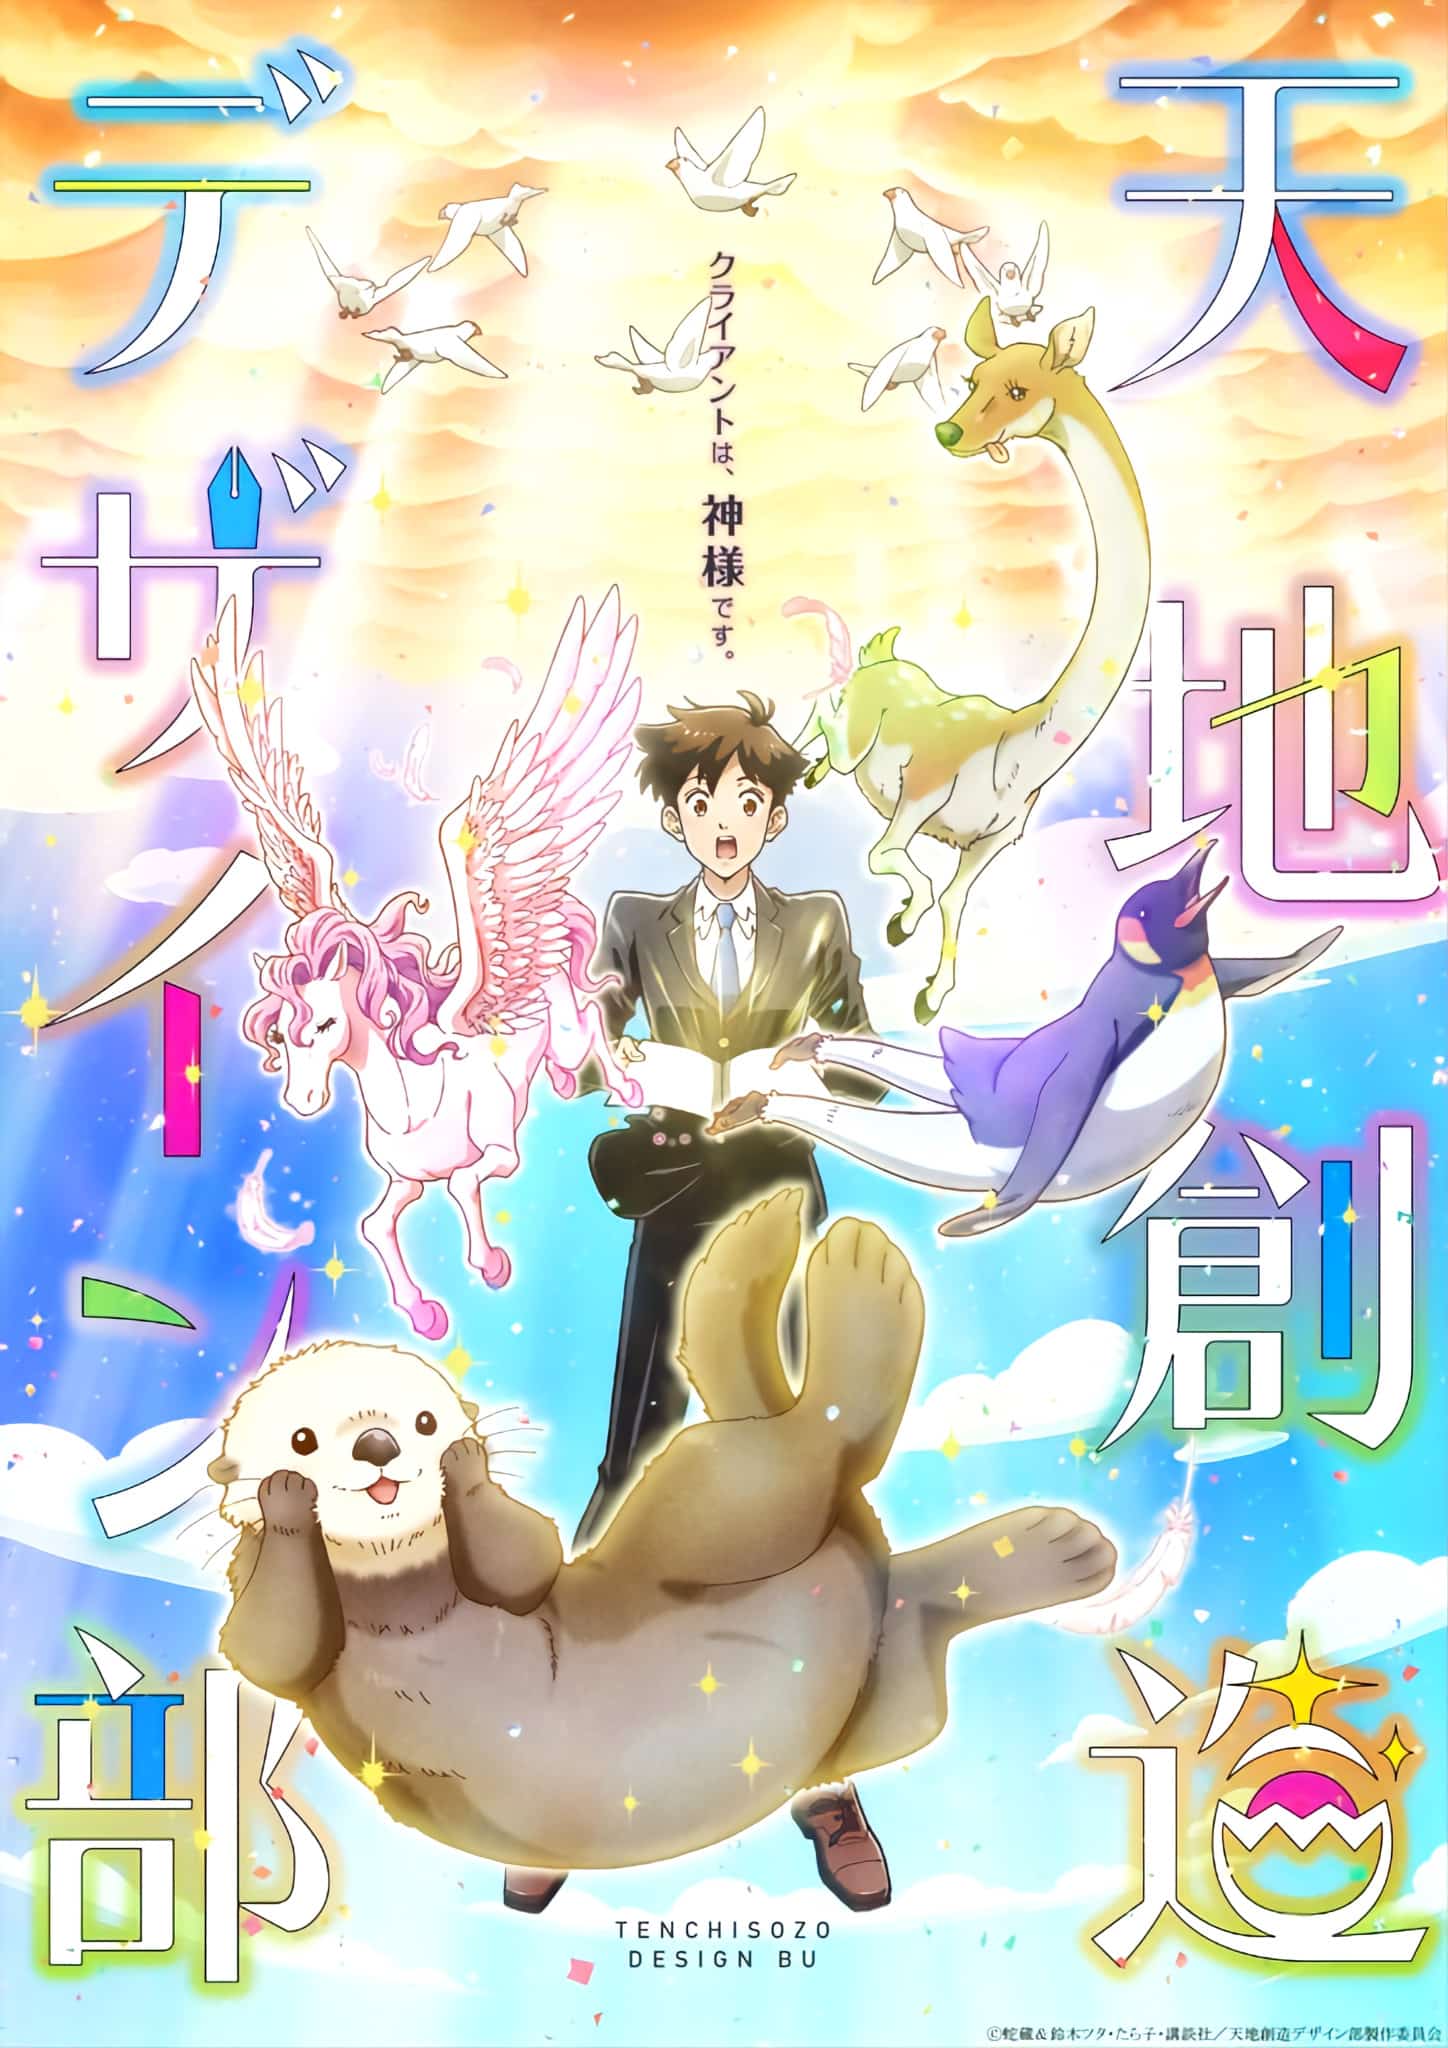 Annonce de l'anime Heaven's Design Team, en date de sortie